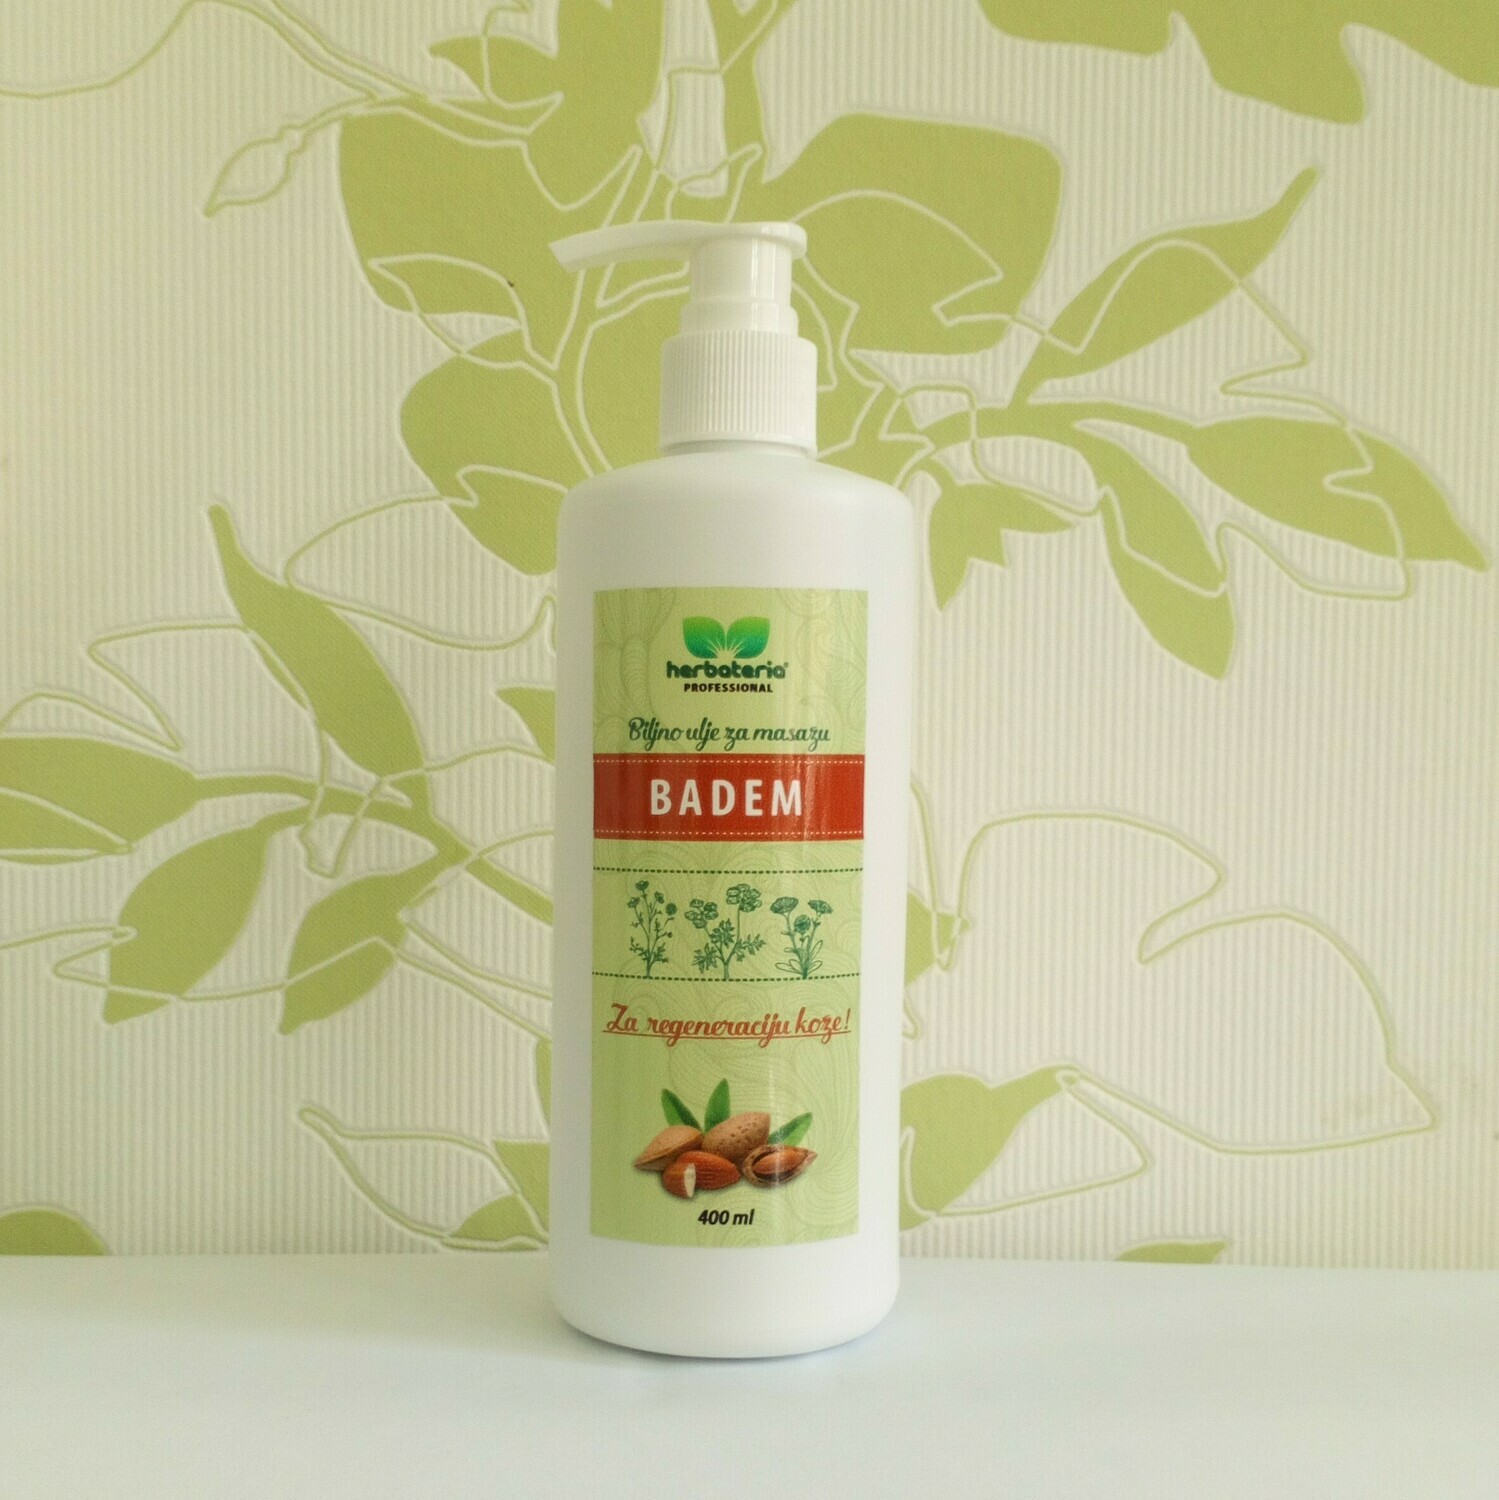 Herbateria - Bademovo ulje za masažu 100% čisto 400 ml